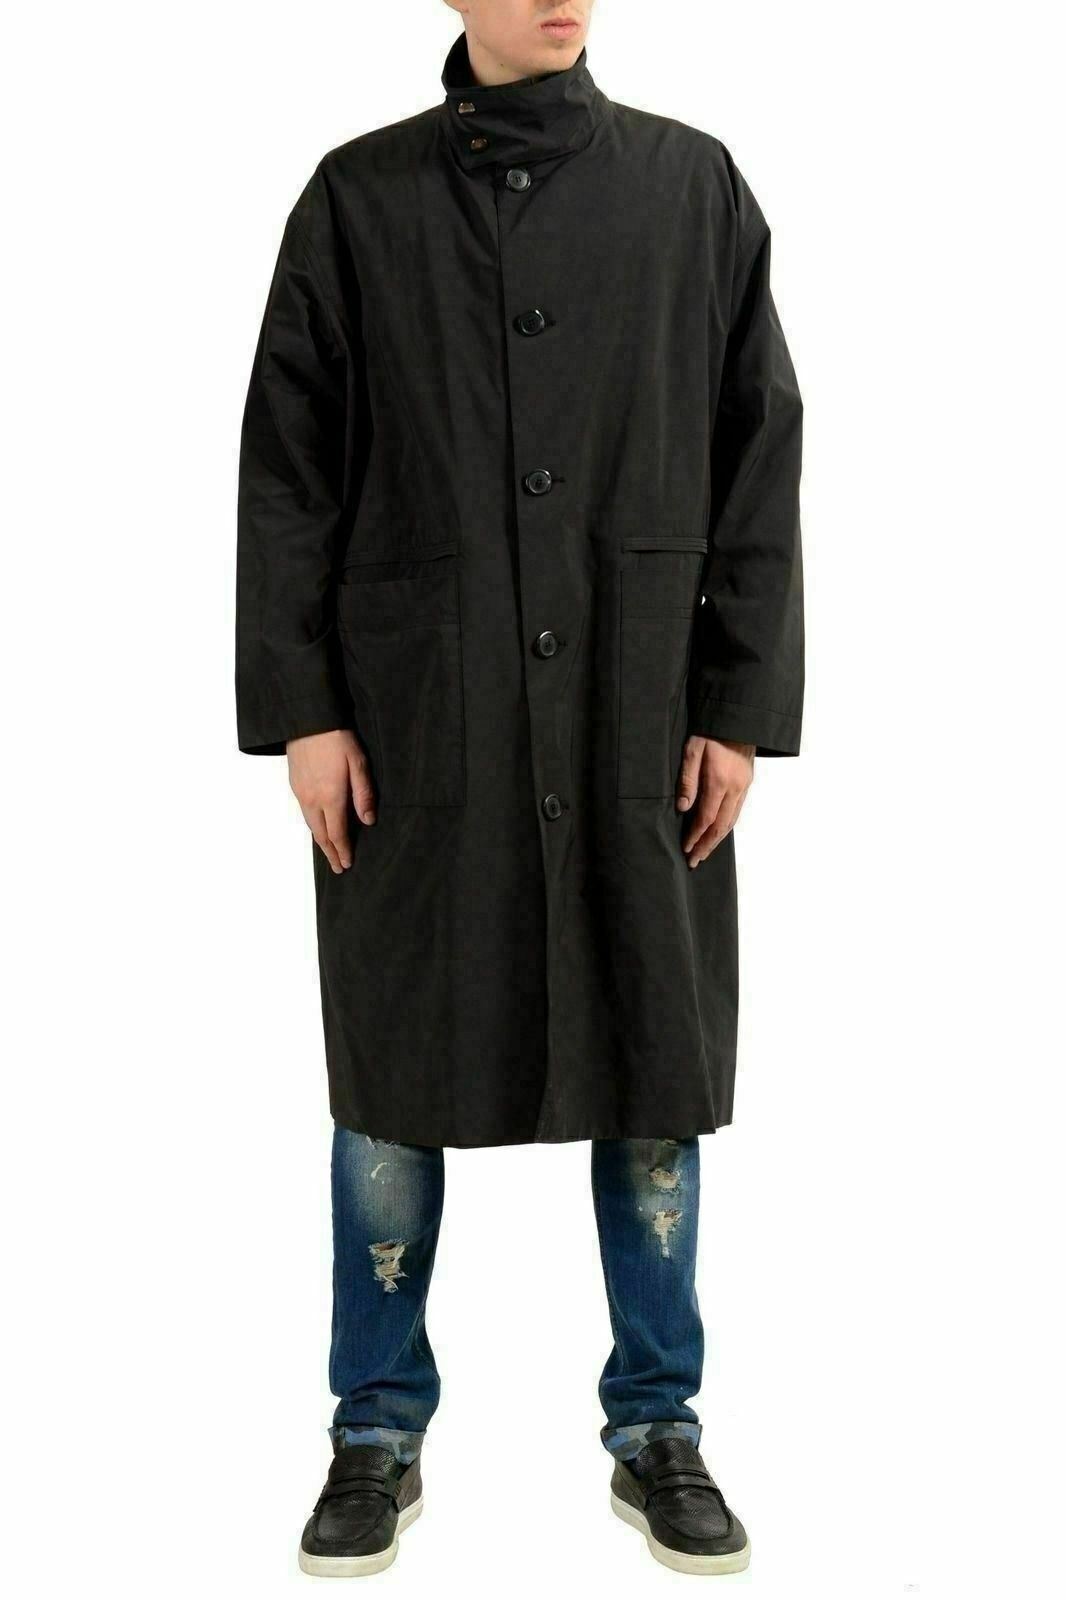 versace trench coat mens